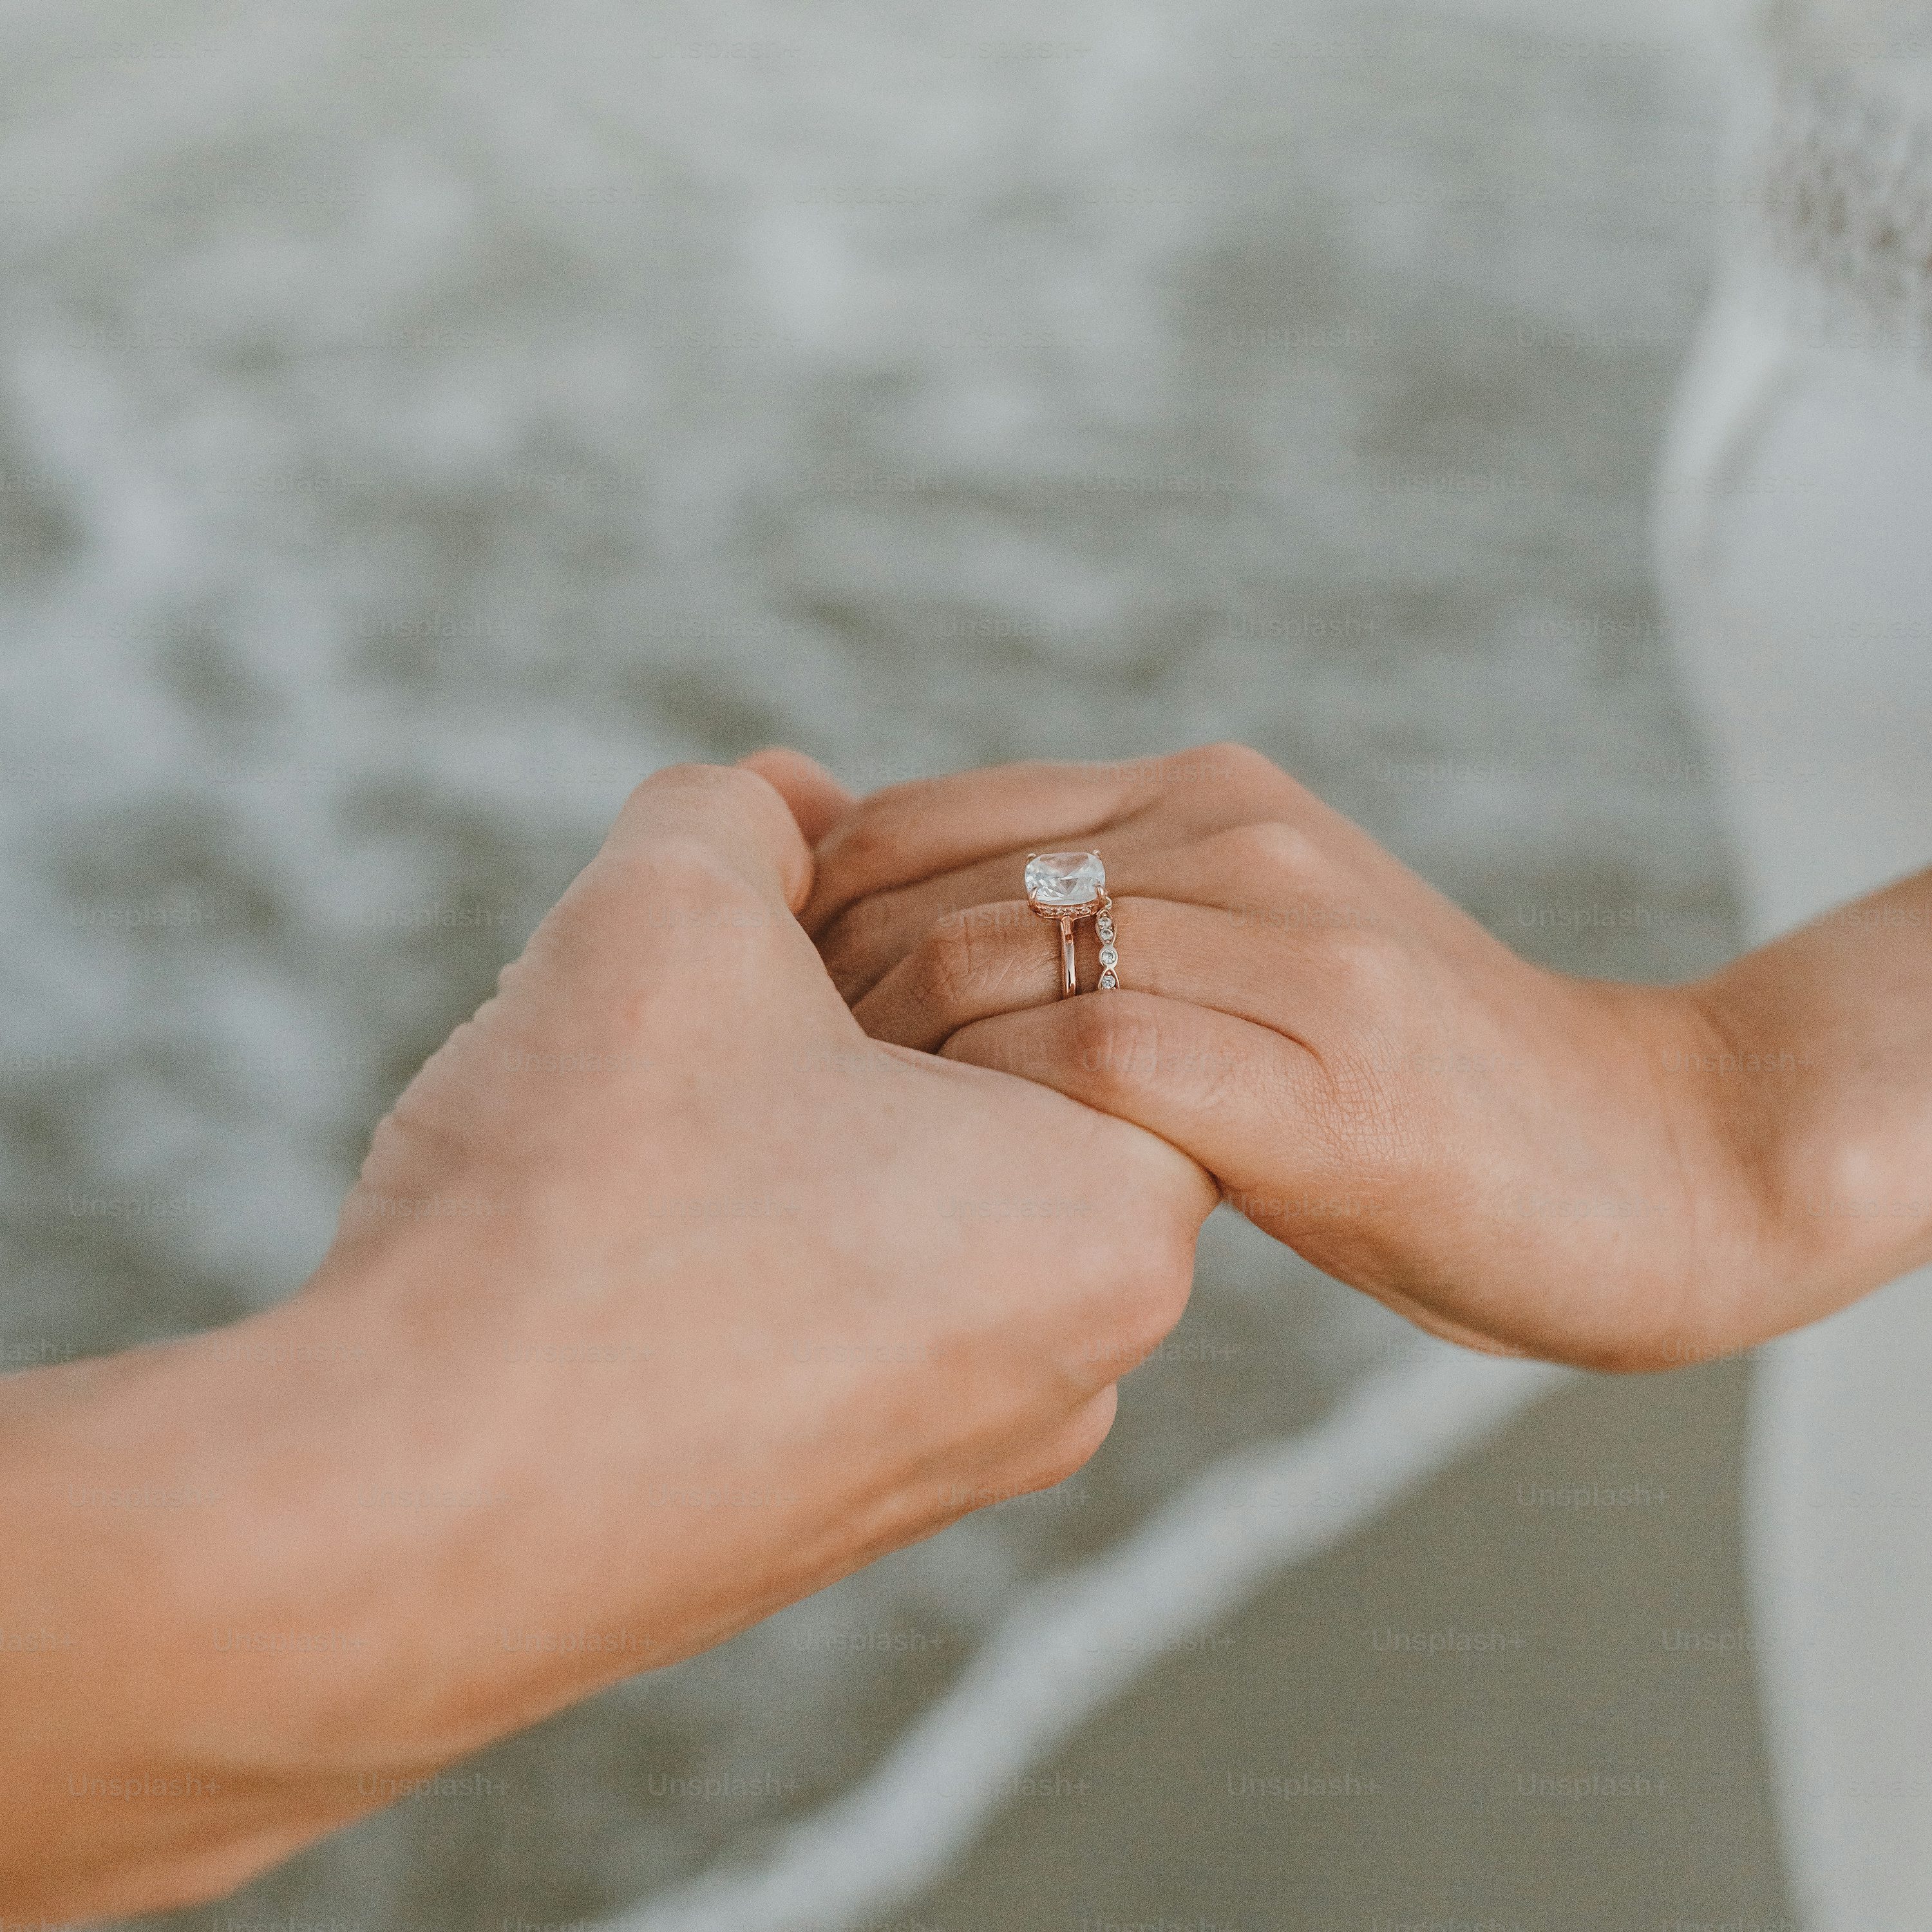 결혼 반지를 들고 있는 한 쌍의 손